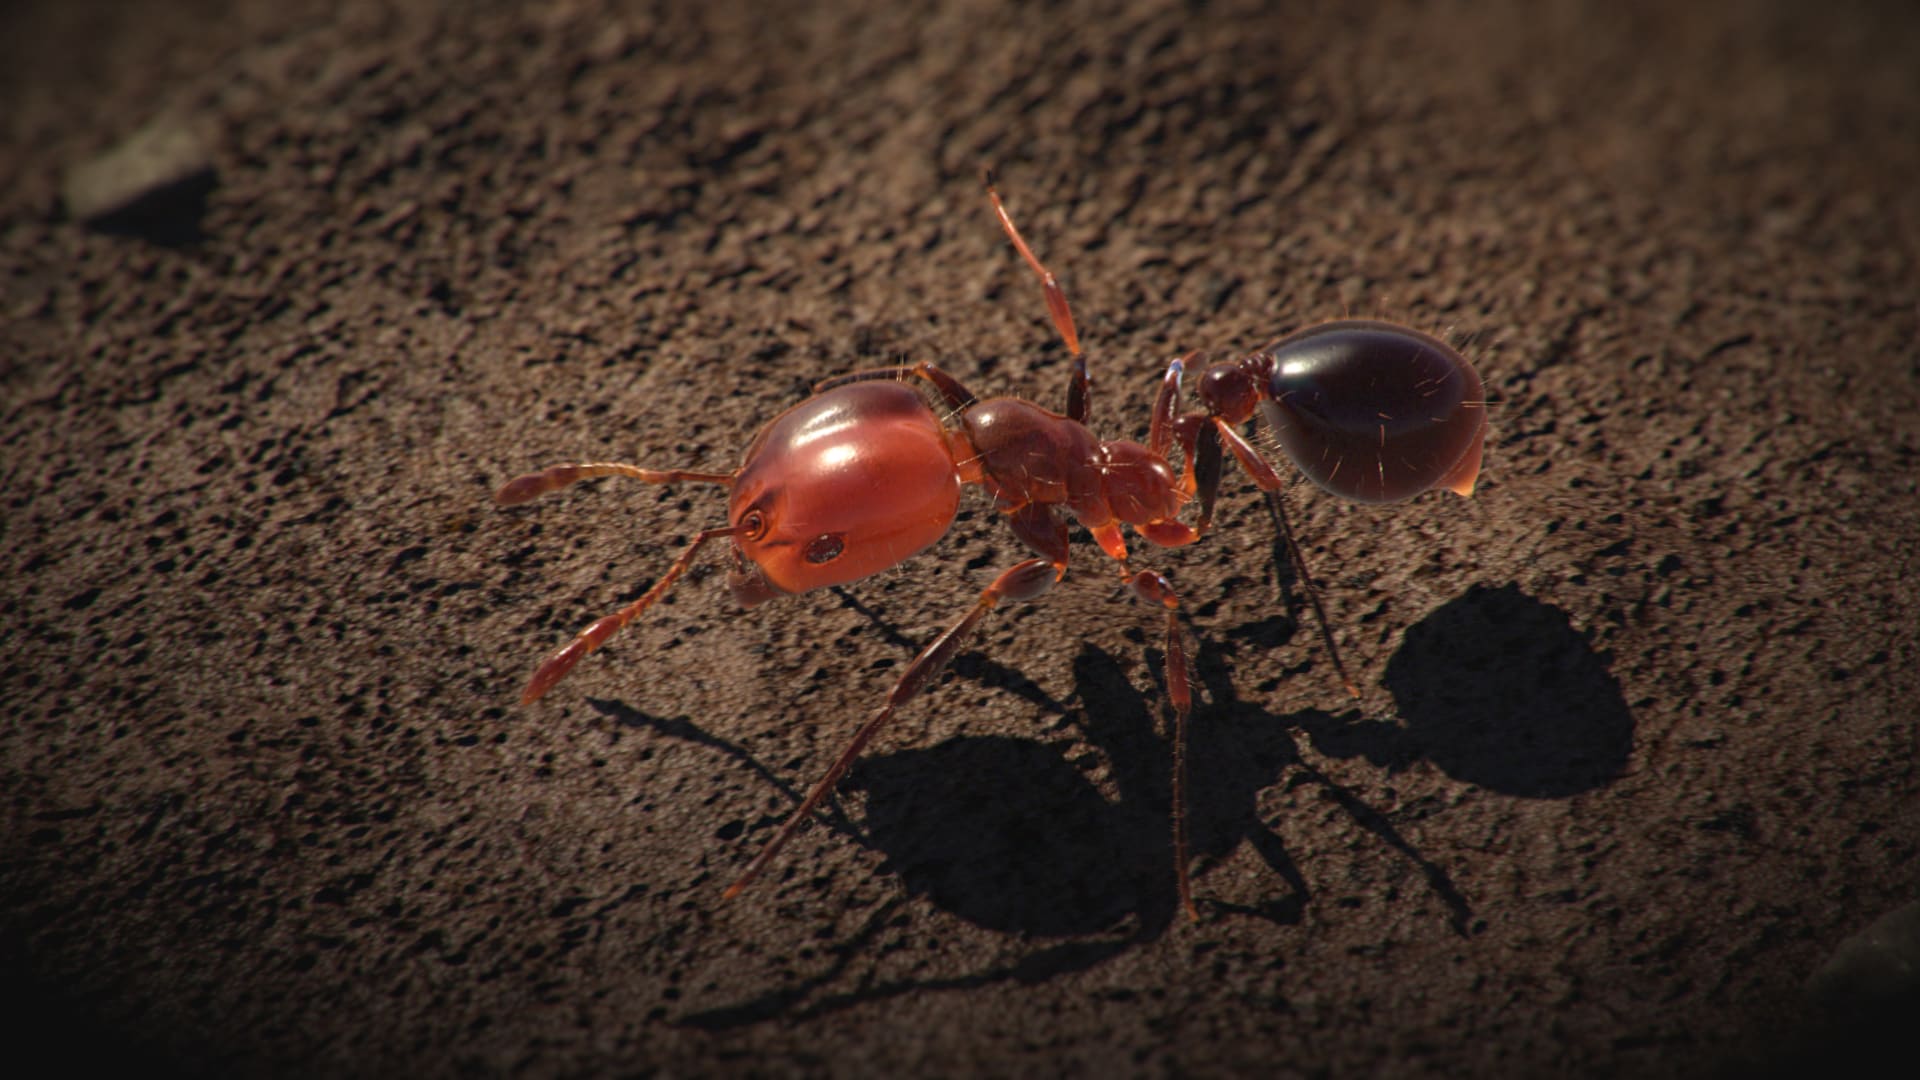 Osamocený ohnivý mravenec neznamená nic. Síla tohoto dobyvatele spočívá ve spojení tisíců spolupracujících jedinců.